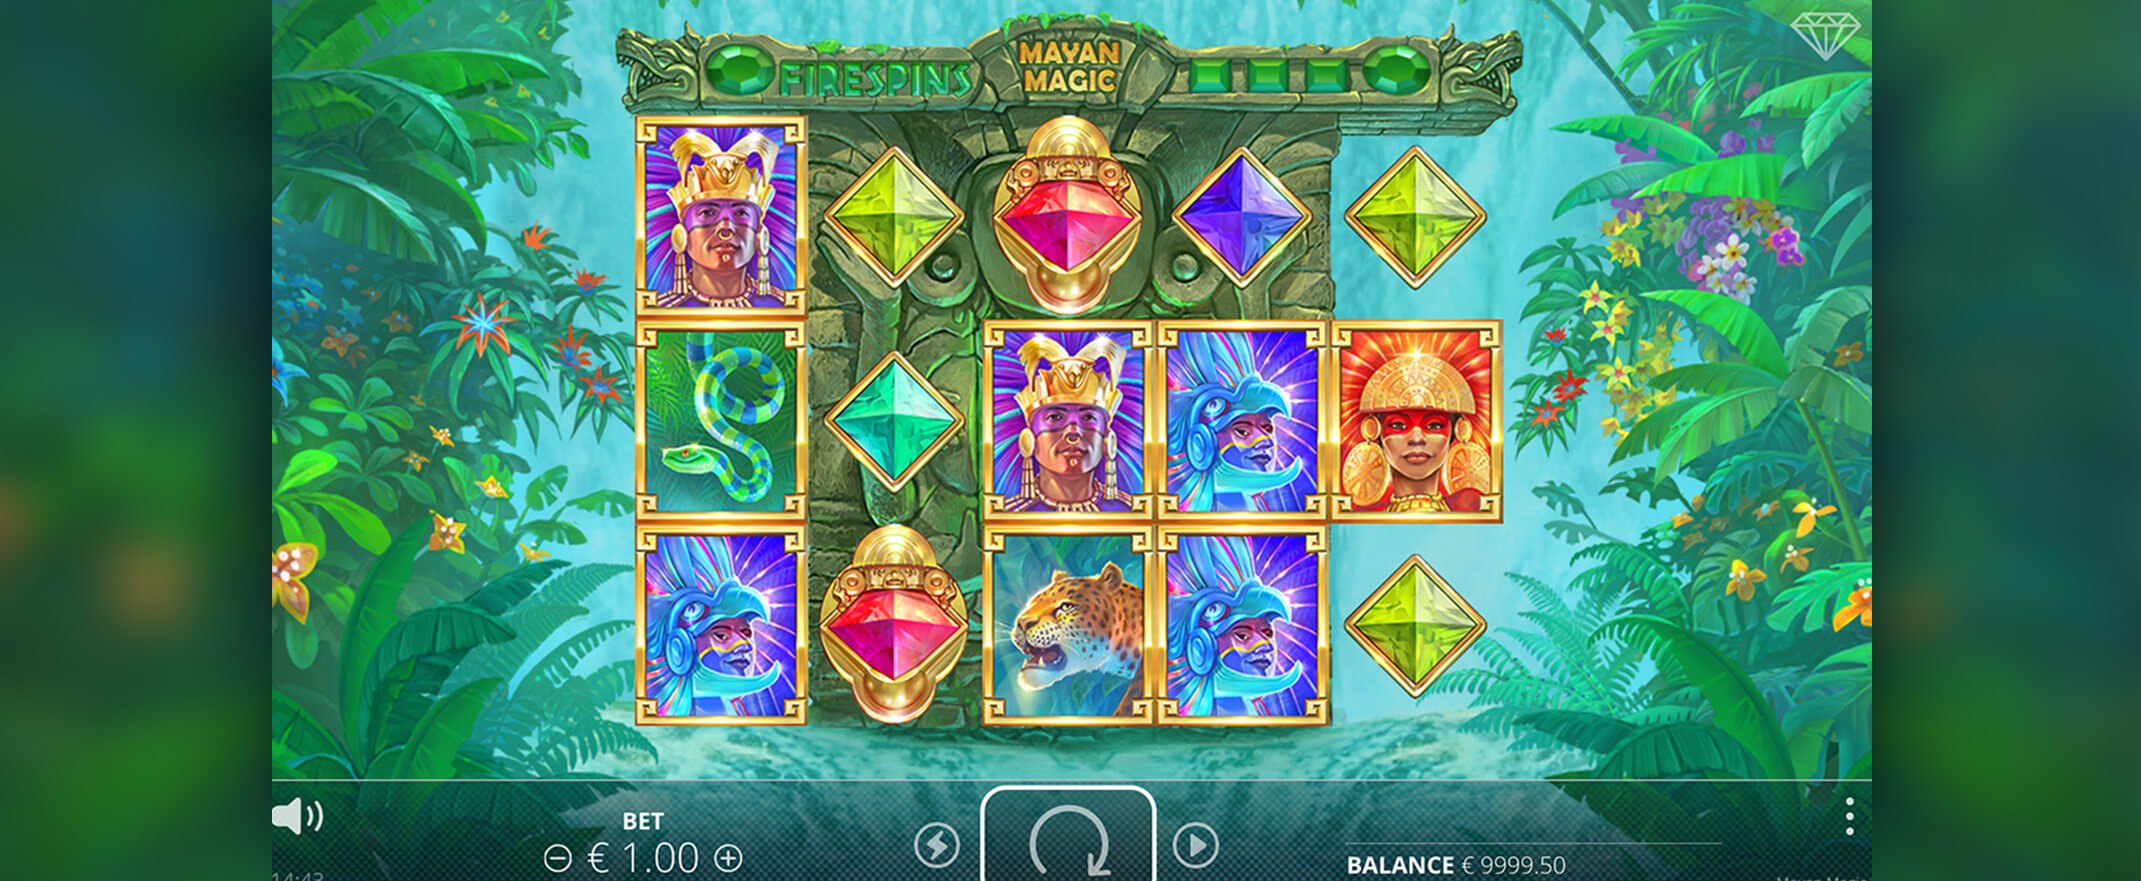 mayan magic spel